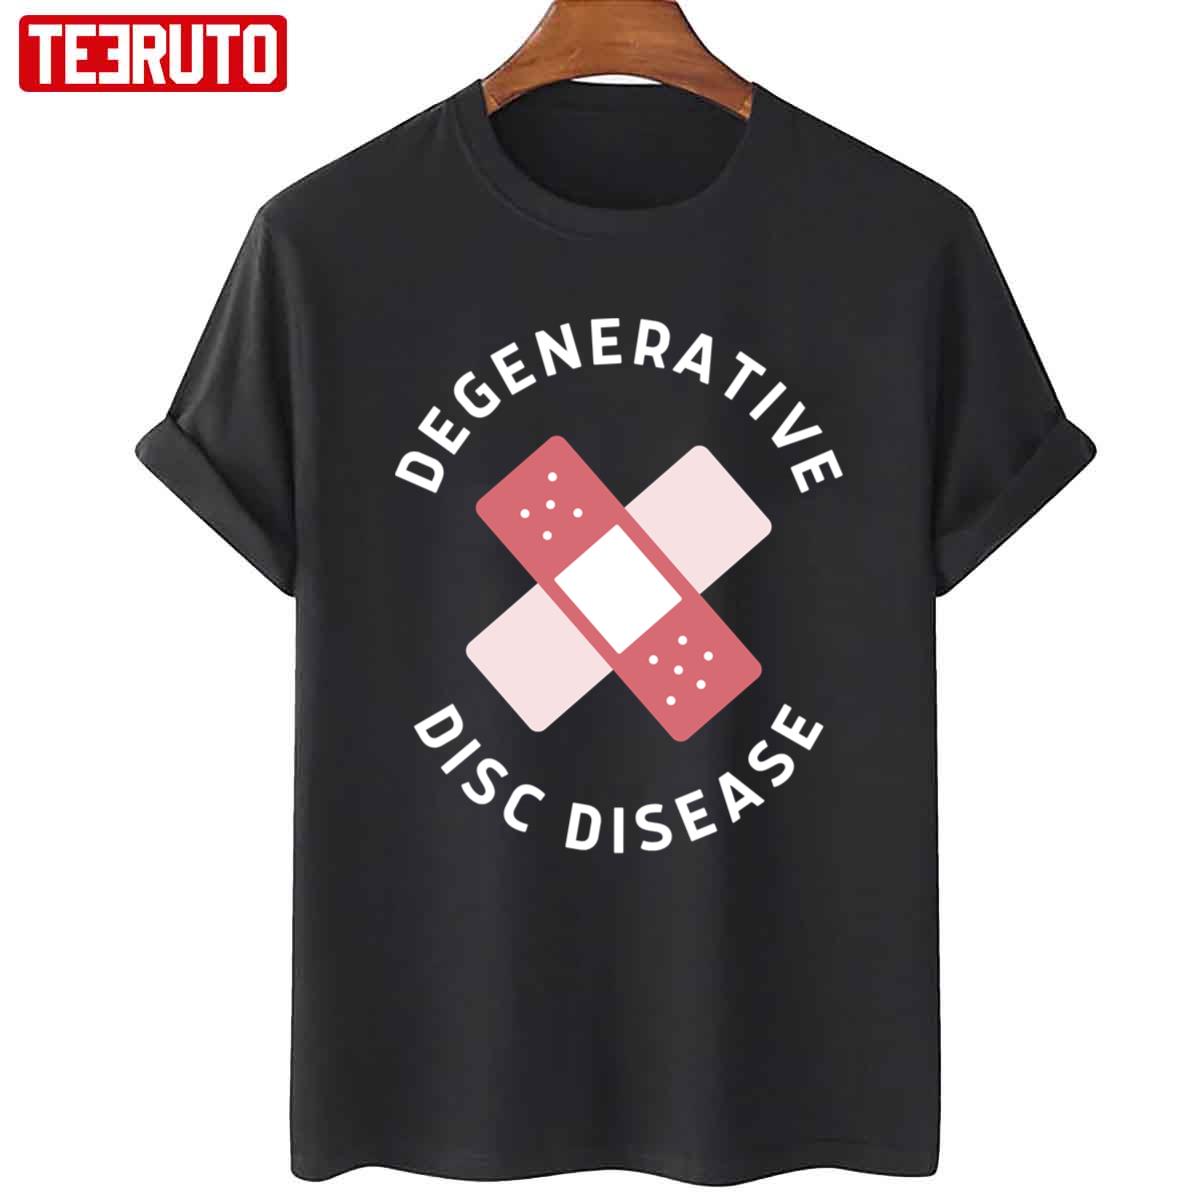 Urgo Degenerative Disc Disease Unisex T-Shirt